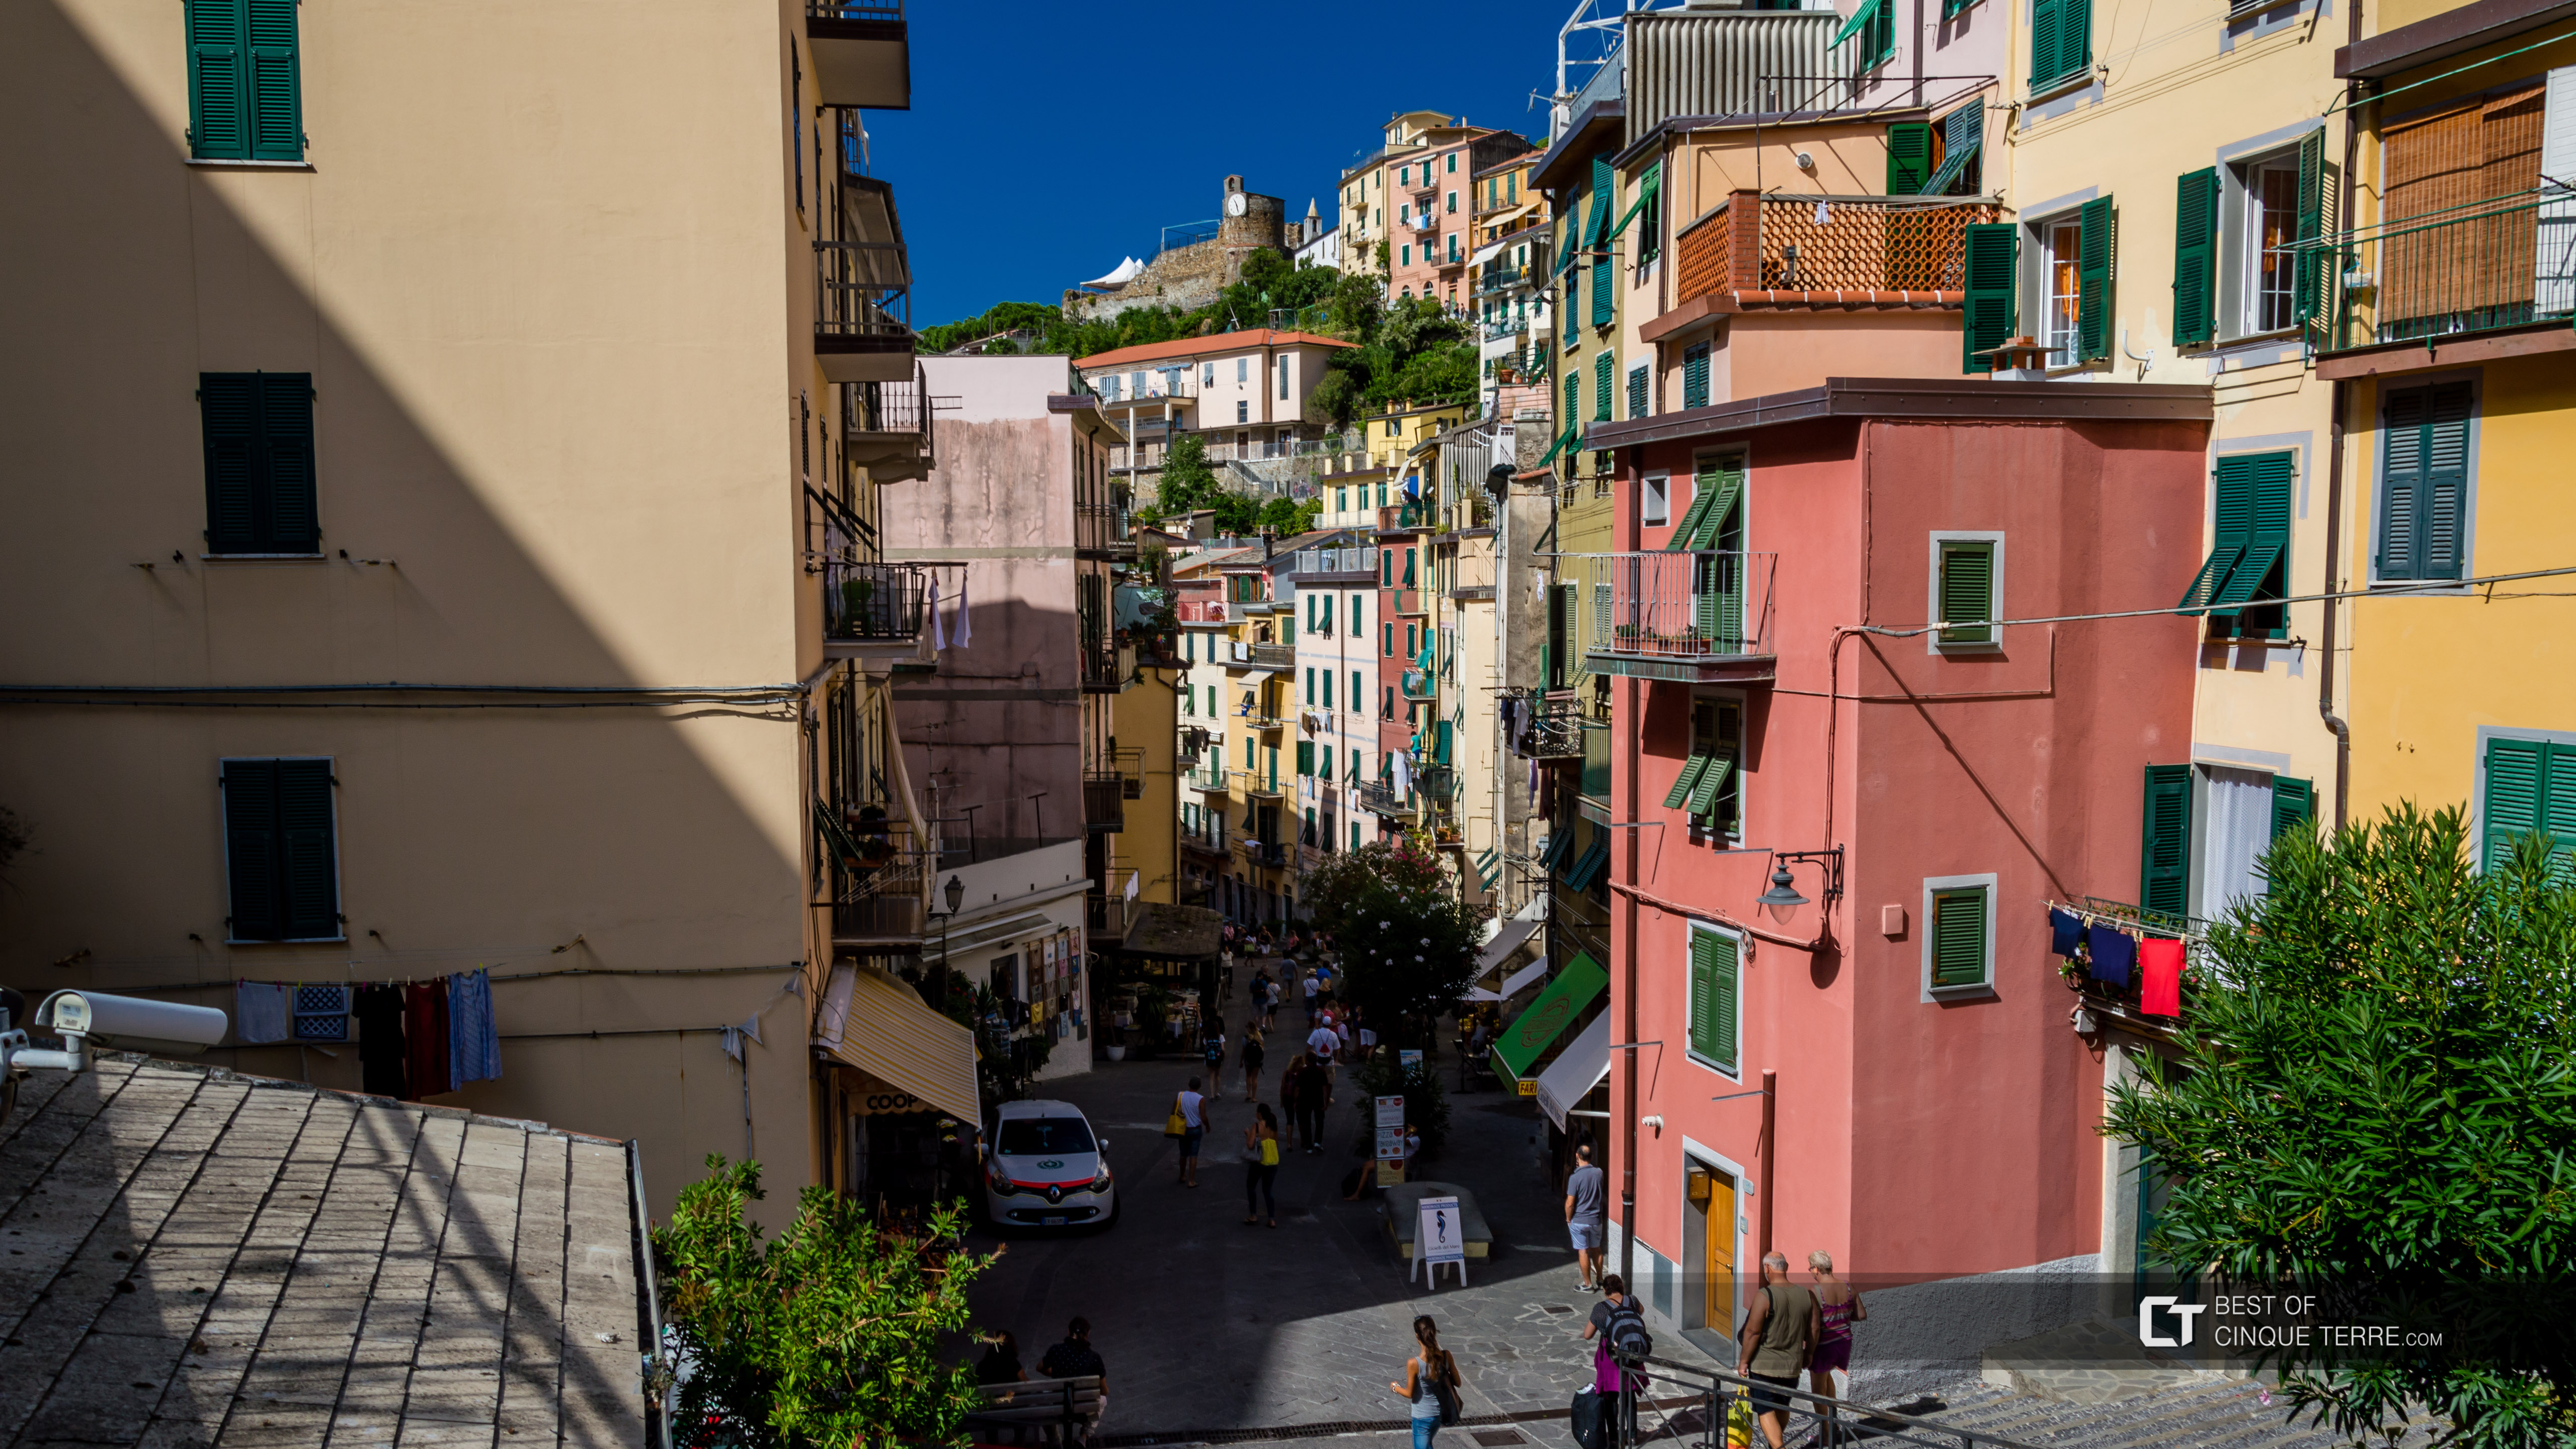 The main street, Riomaggiore, Cinque Terre, Italy